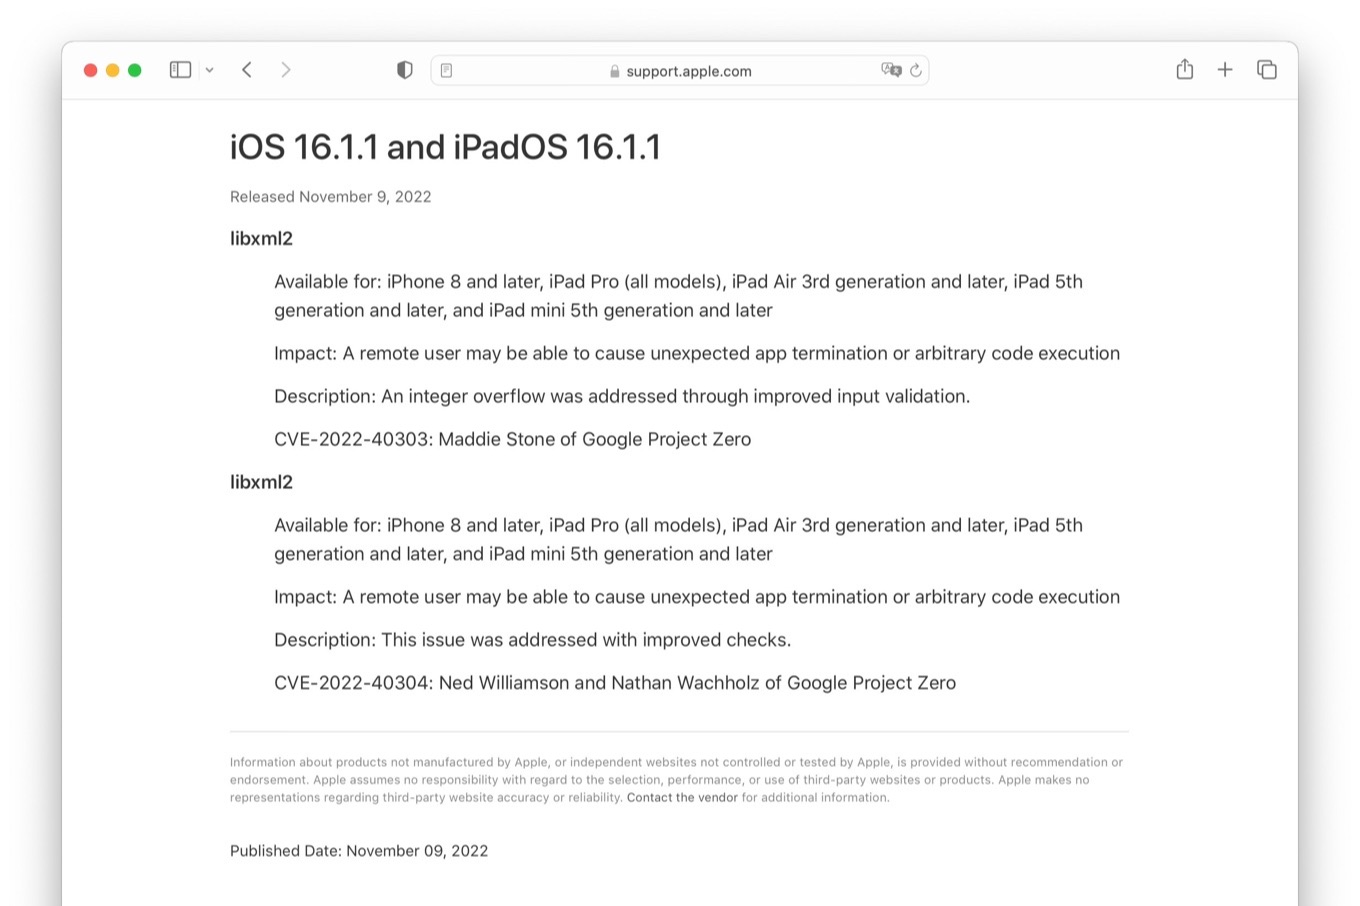 Apple fixed CVE-2022-40303 and CVE-2022-40304